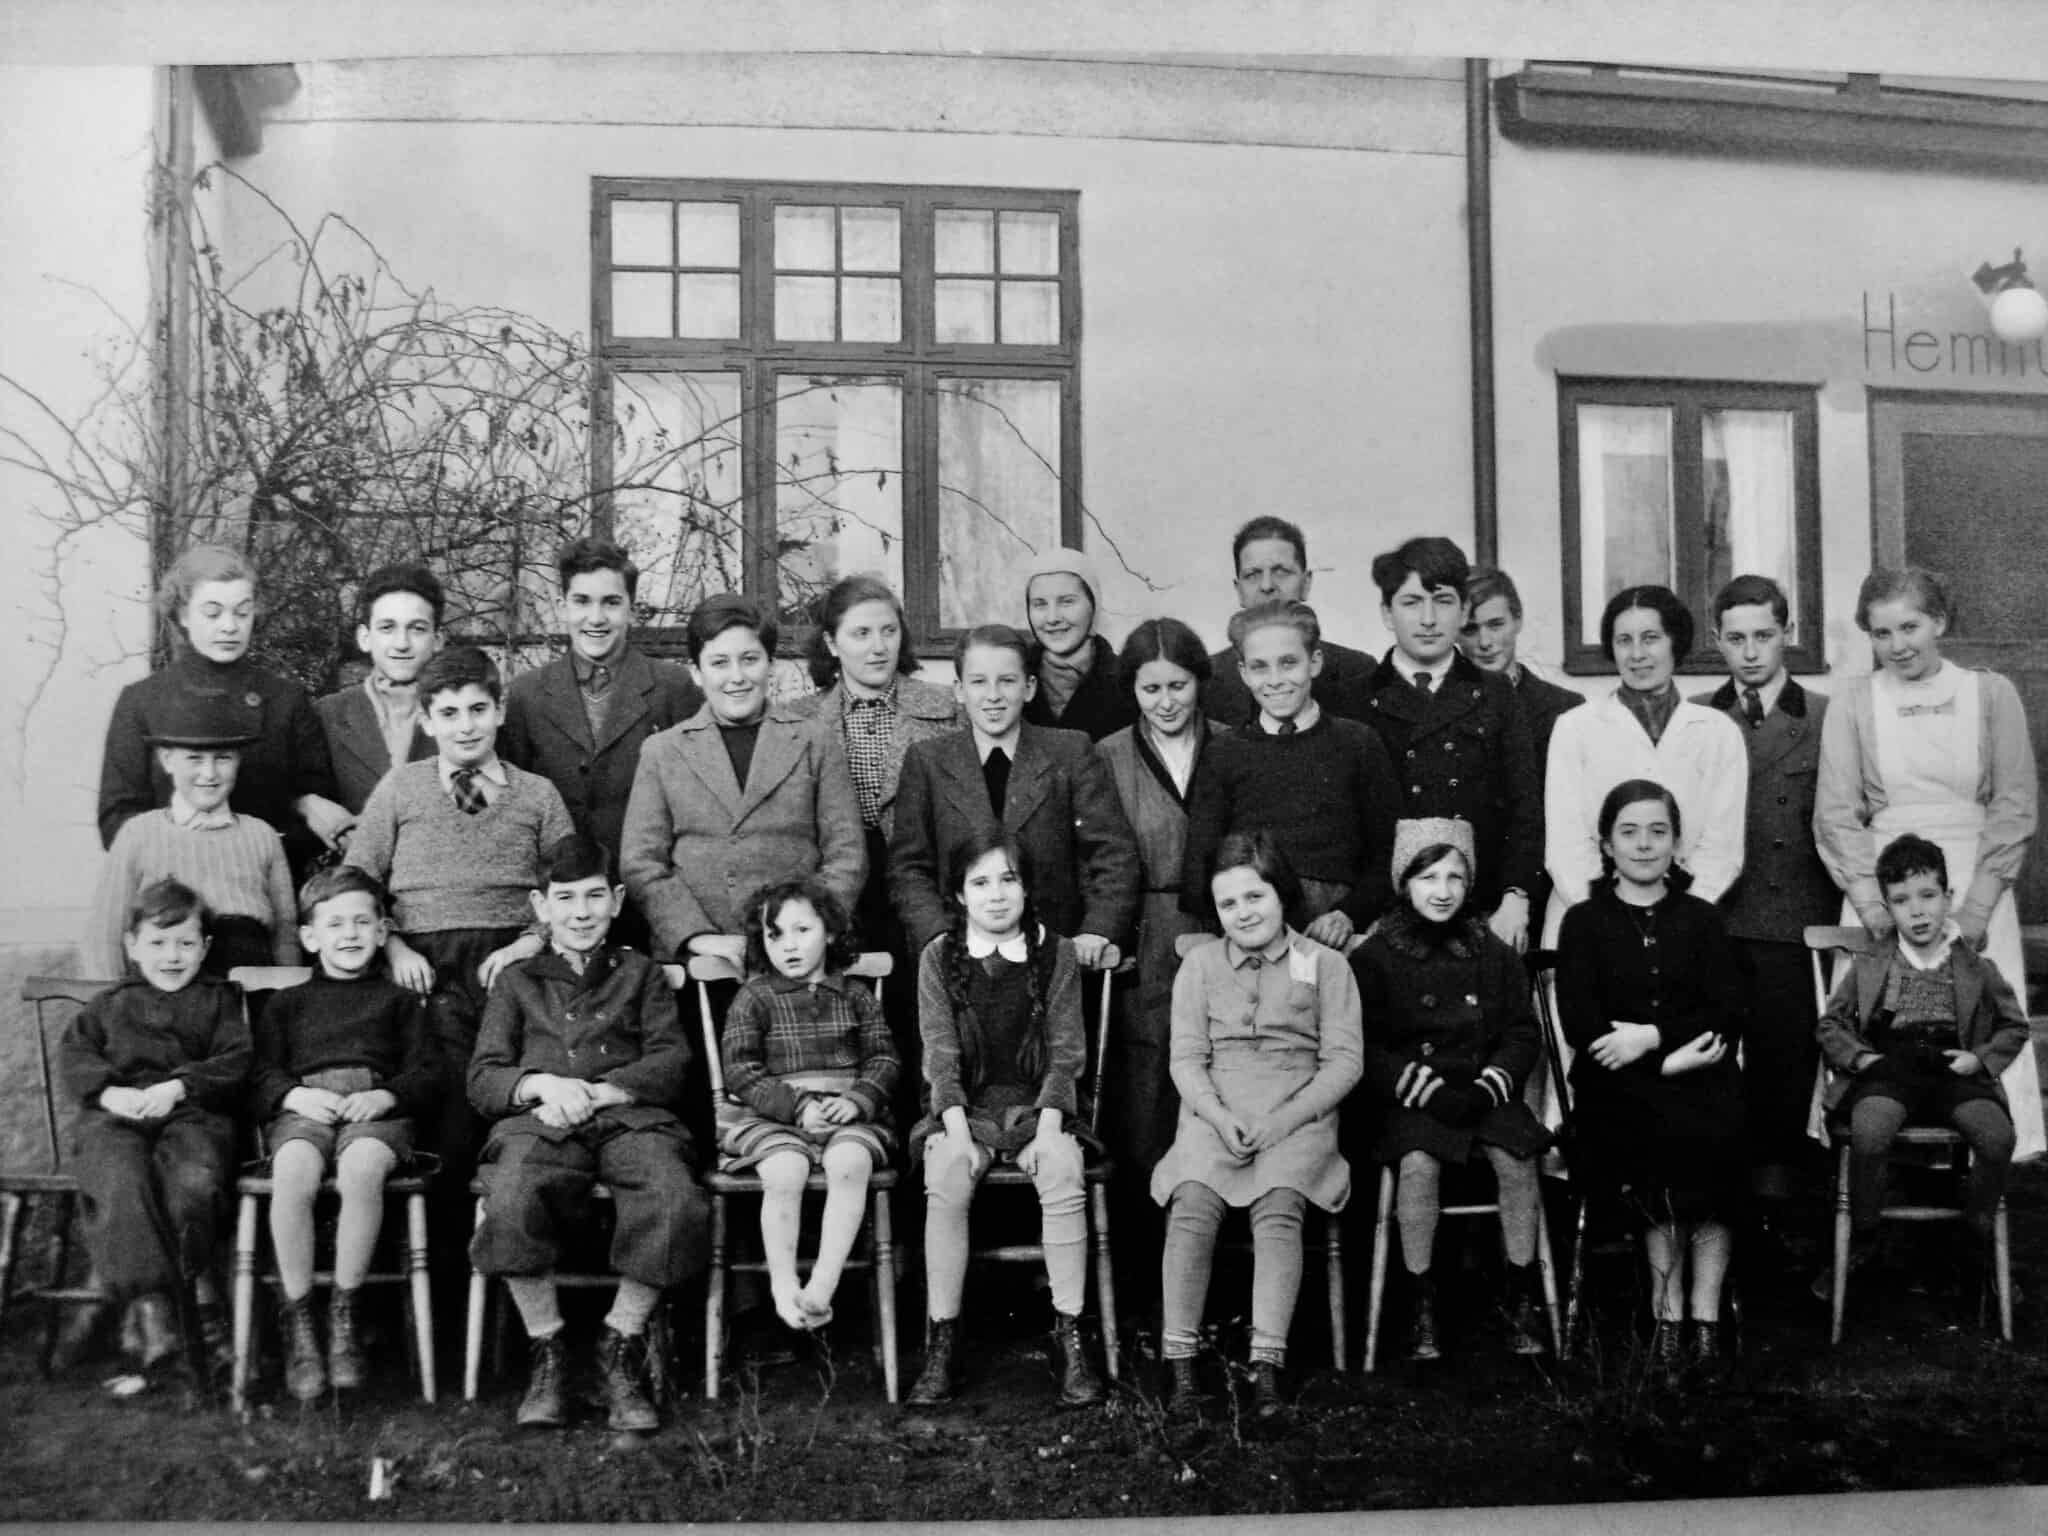 תמונה קבוצתית של ילדים בבית יתומים בטולארפ, בדרום שוודיה, שצולמה ככל הנראה זמן קצר לאחר הגעתם, בפברואר 1939. אוטו אולמן עומד בשורה האמצעית, שני משמאל (צילום: אליזבת אוסברינק)